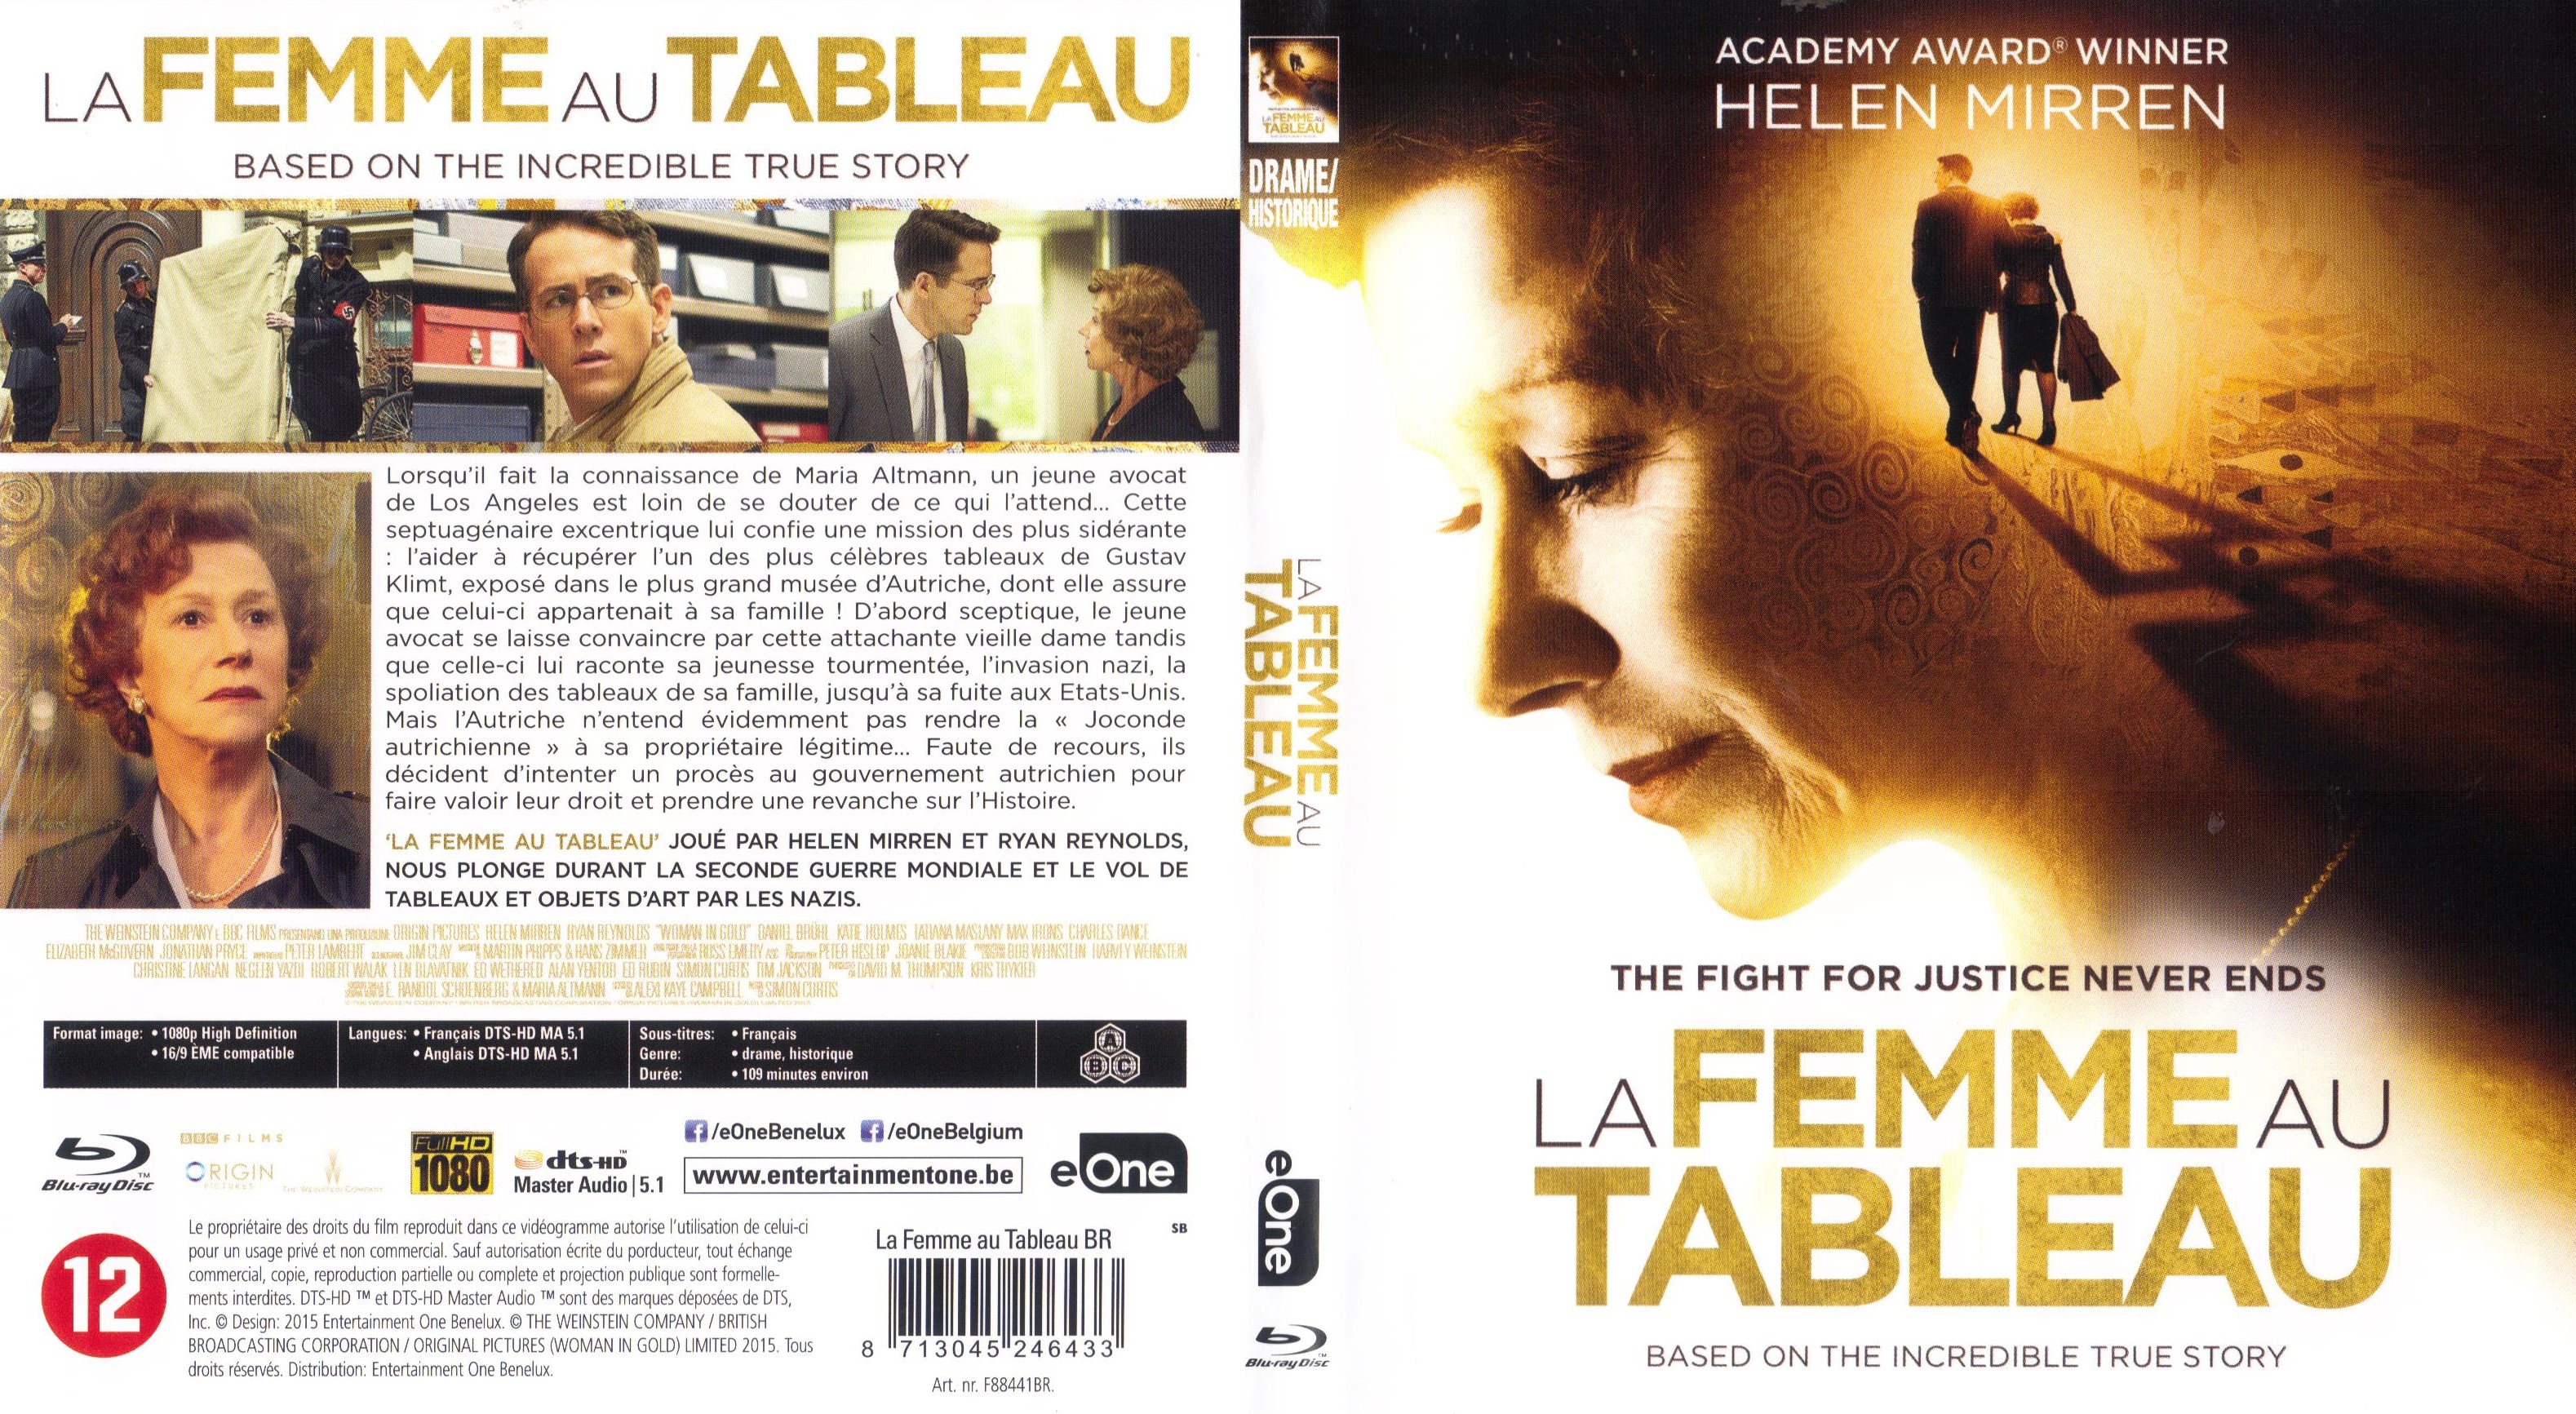 Jaquette DVD La femme au tableau (BLU-RAY)